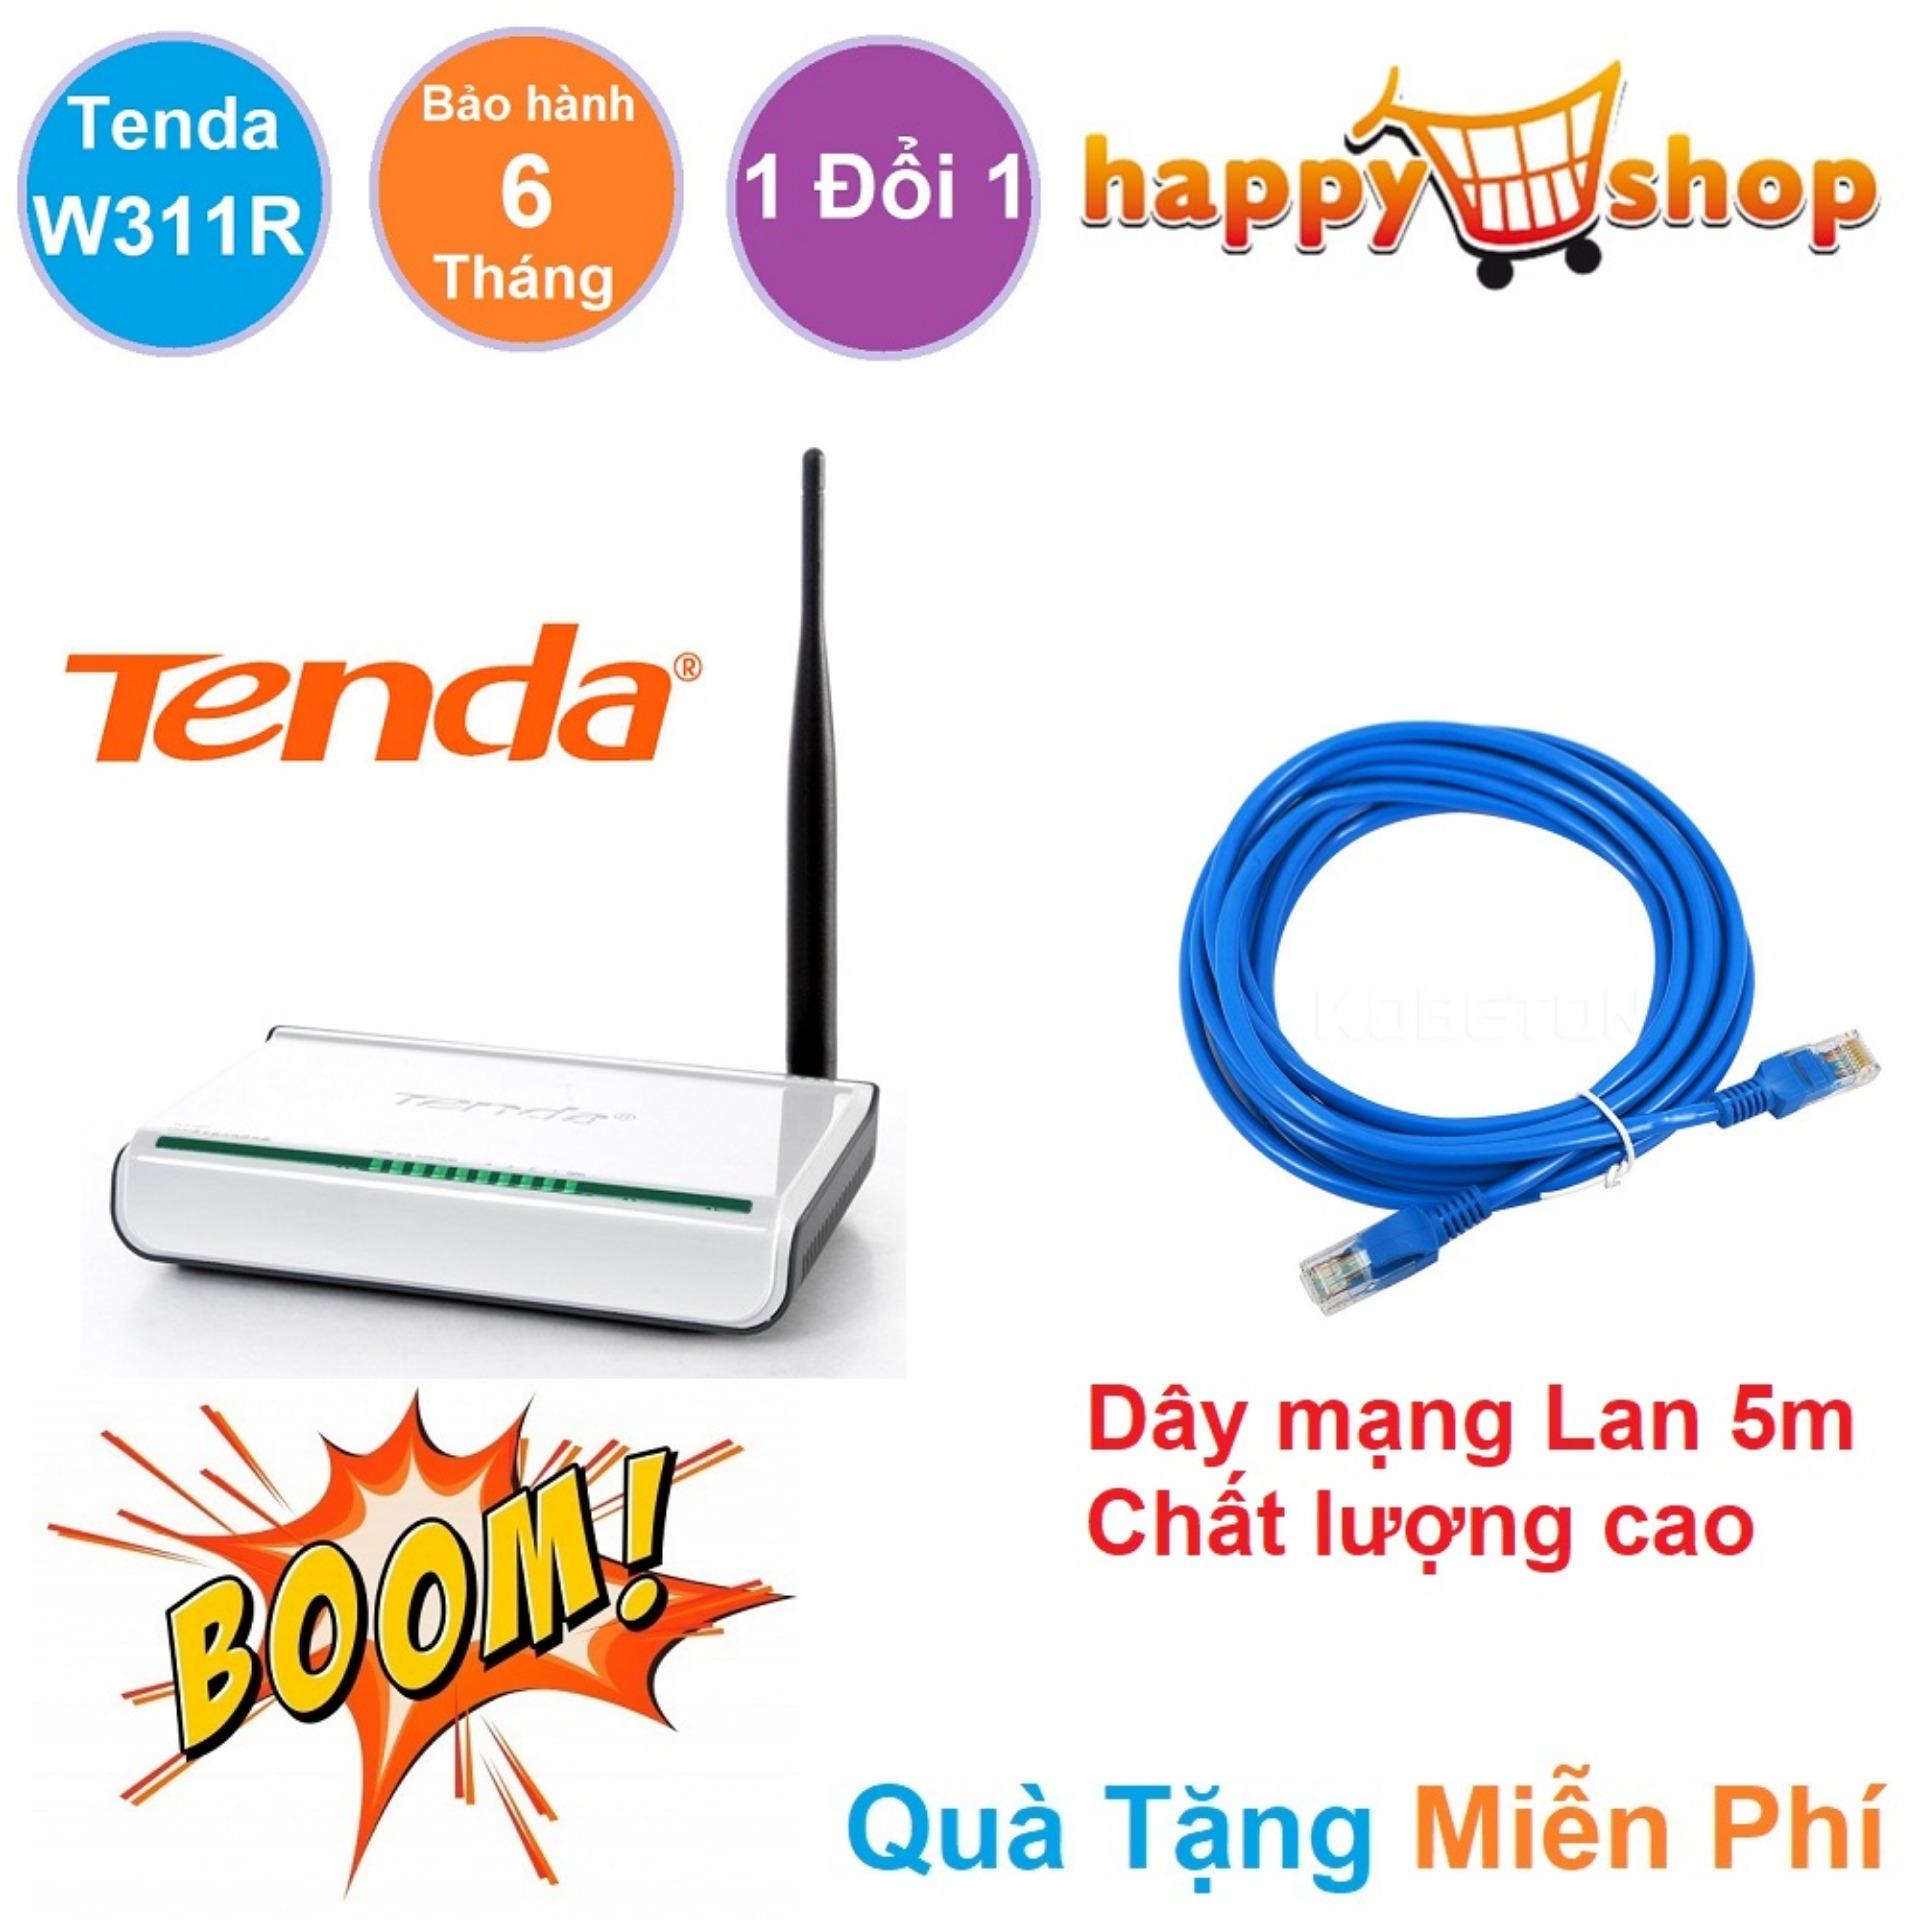 Bộ phát sóng Wifi 1 râu Tenda W311R 150M thích hợp cho các bạn trẻ, bạn sinh viên có phòng...